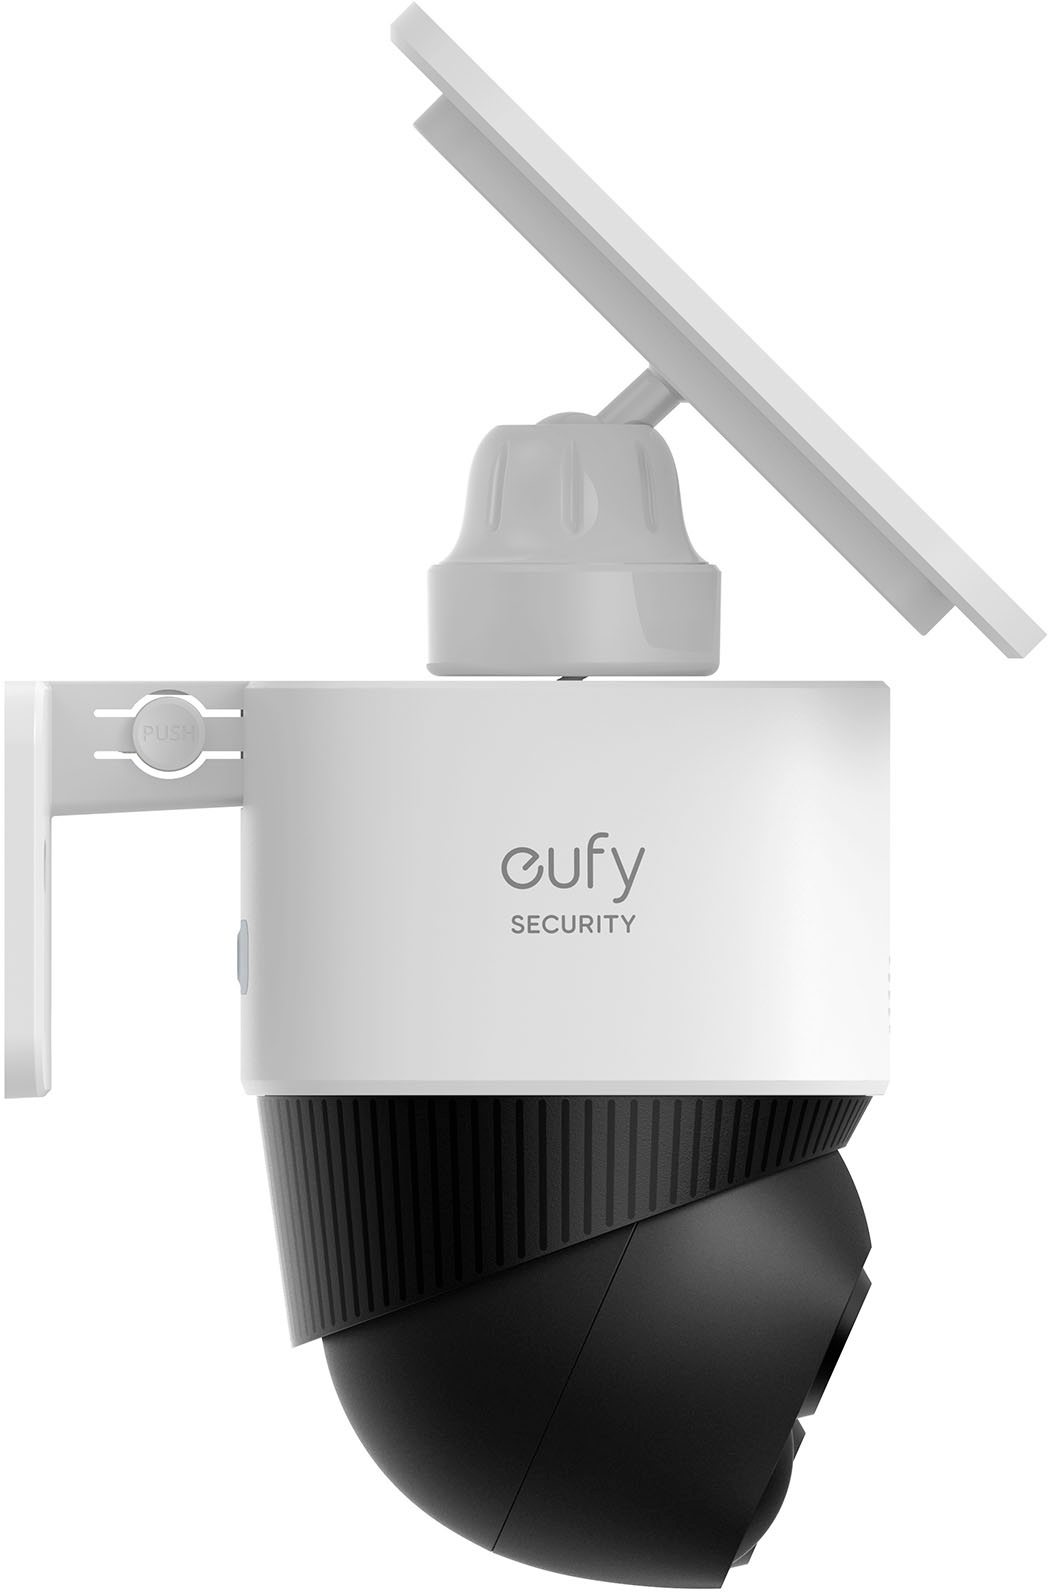 Eufy SoloCam E40 review: A great security camera